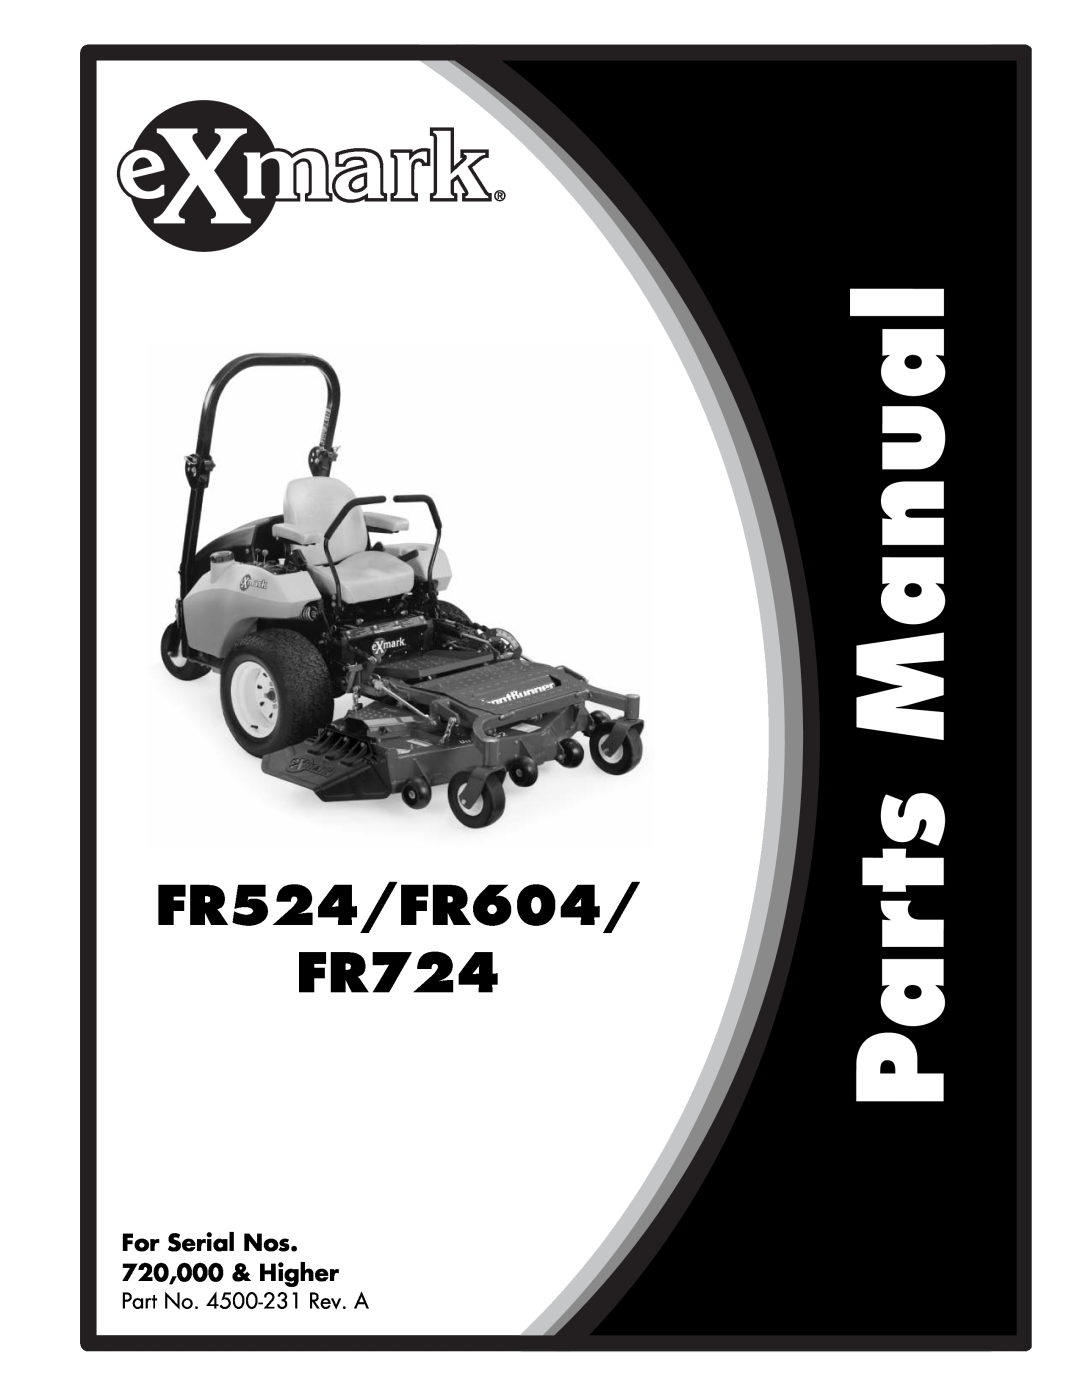 Exmark manual Part No. 4500-231Rev. A, FR524/FR604 FR724, For Serial Nos 720,000 & Higher 